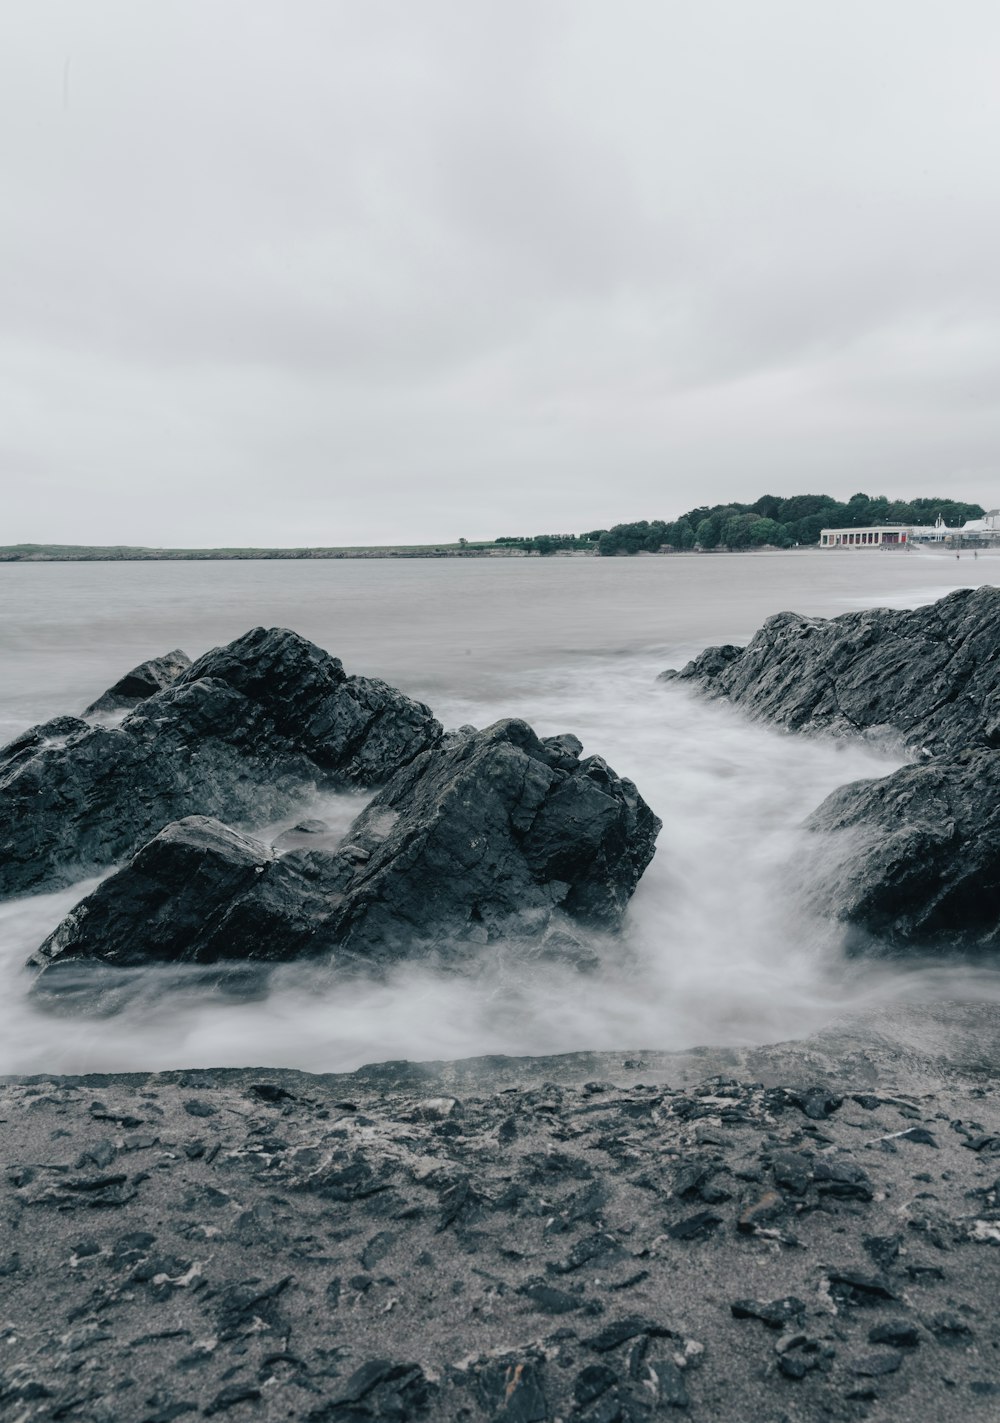 Una foto in bianco e nero di rocce nell'acqua